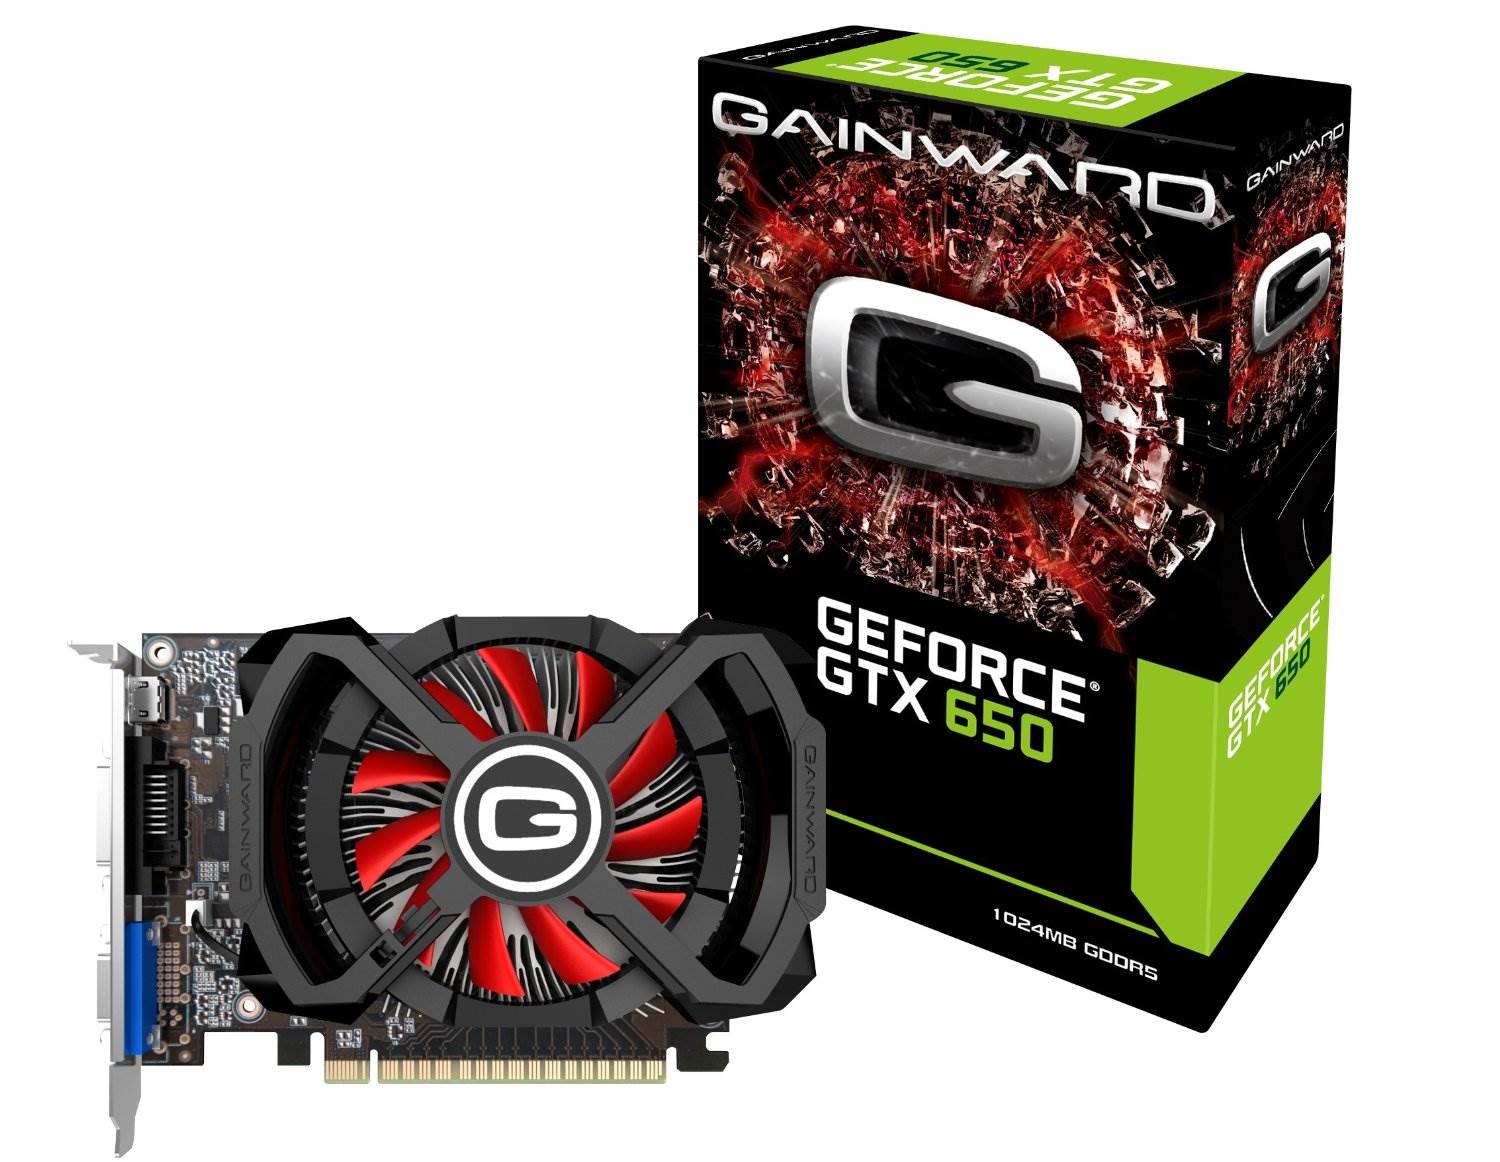 Gainward GeForce GTX650 1GB